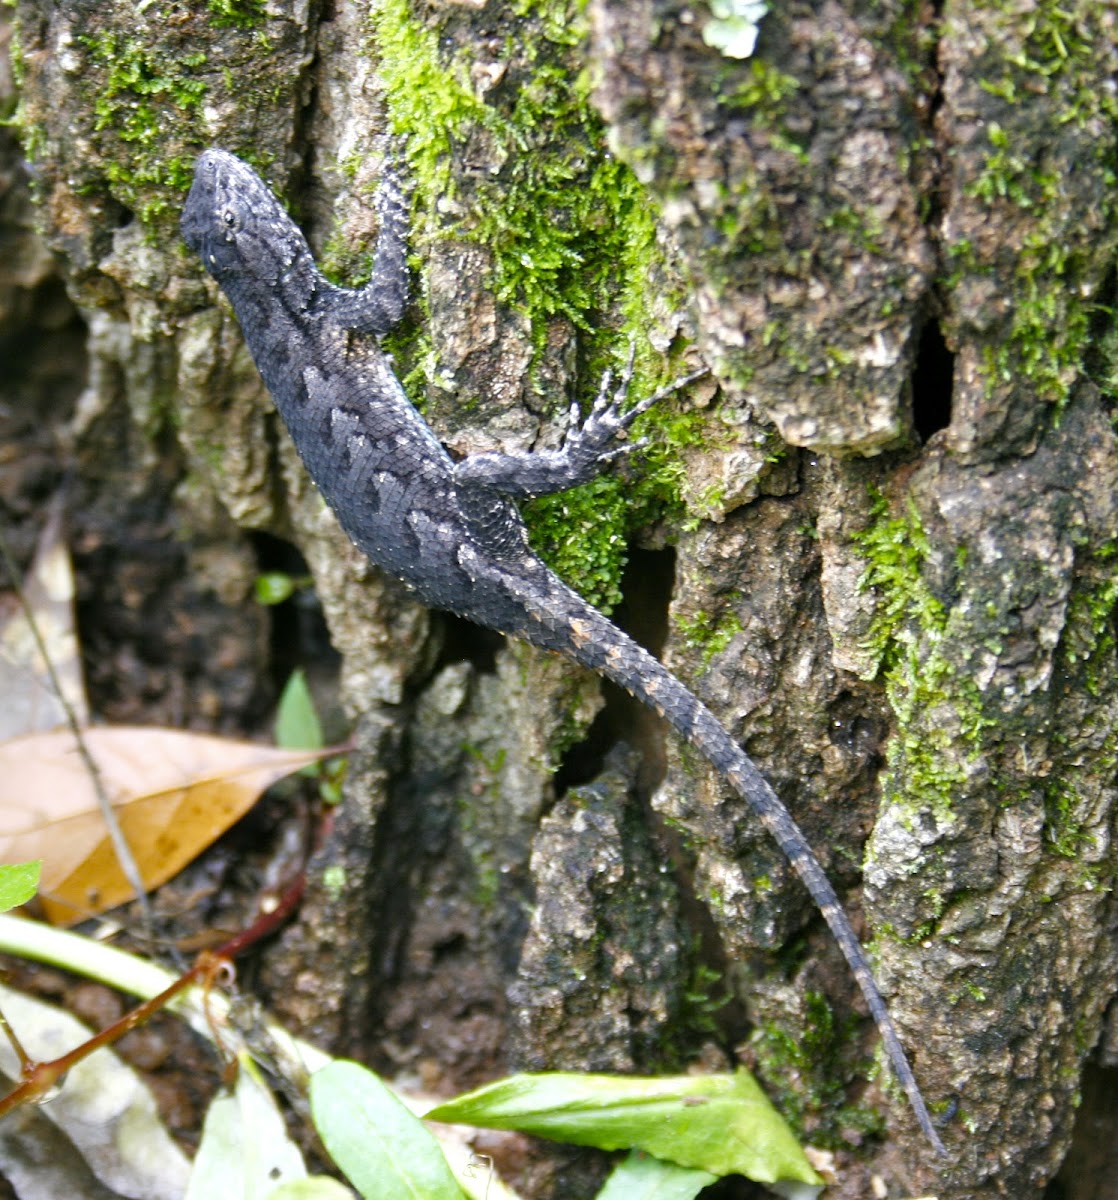 Eastern Fence Lizard, male